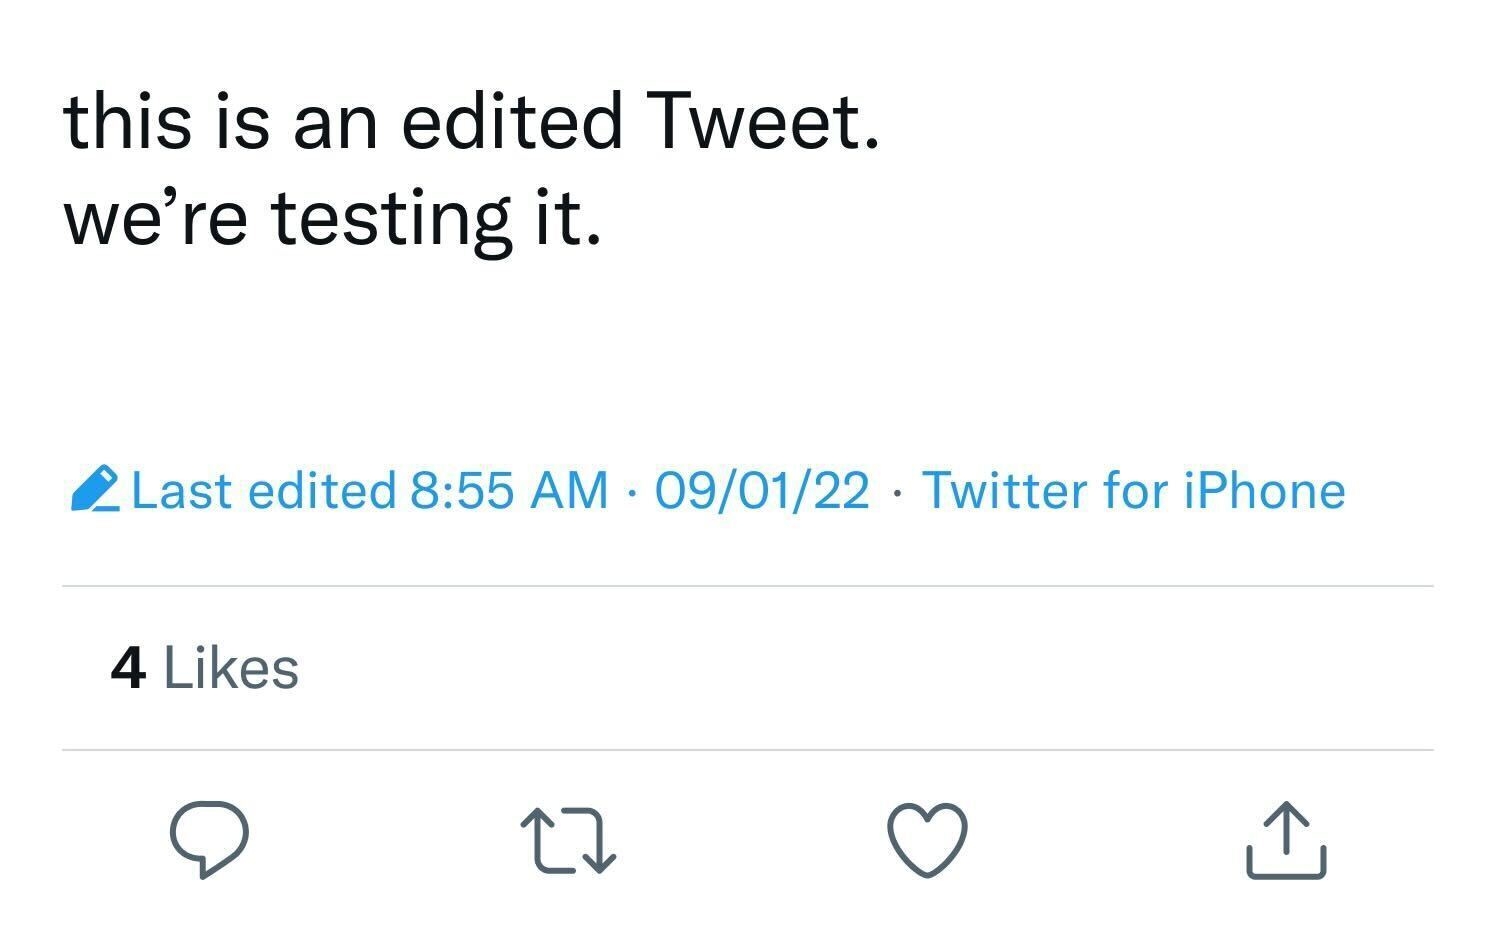 Twitter Edited Tweet - testing